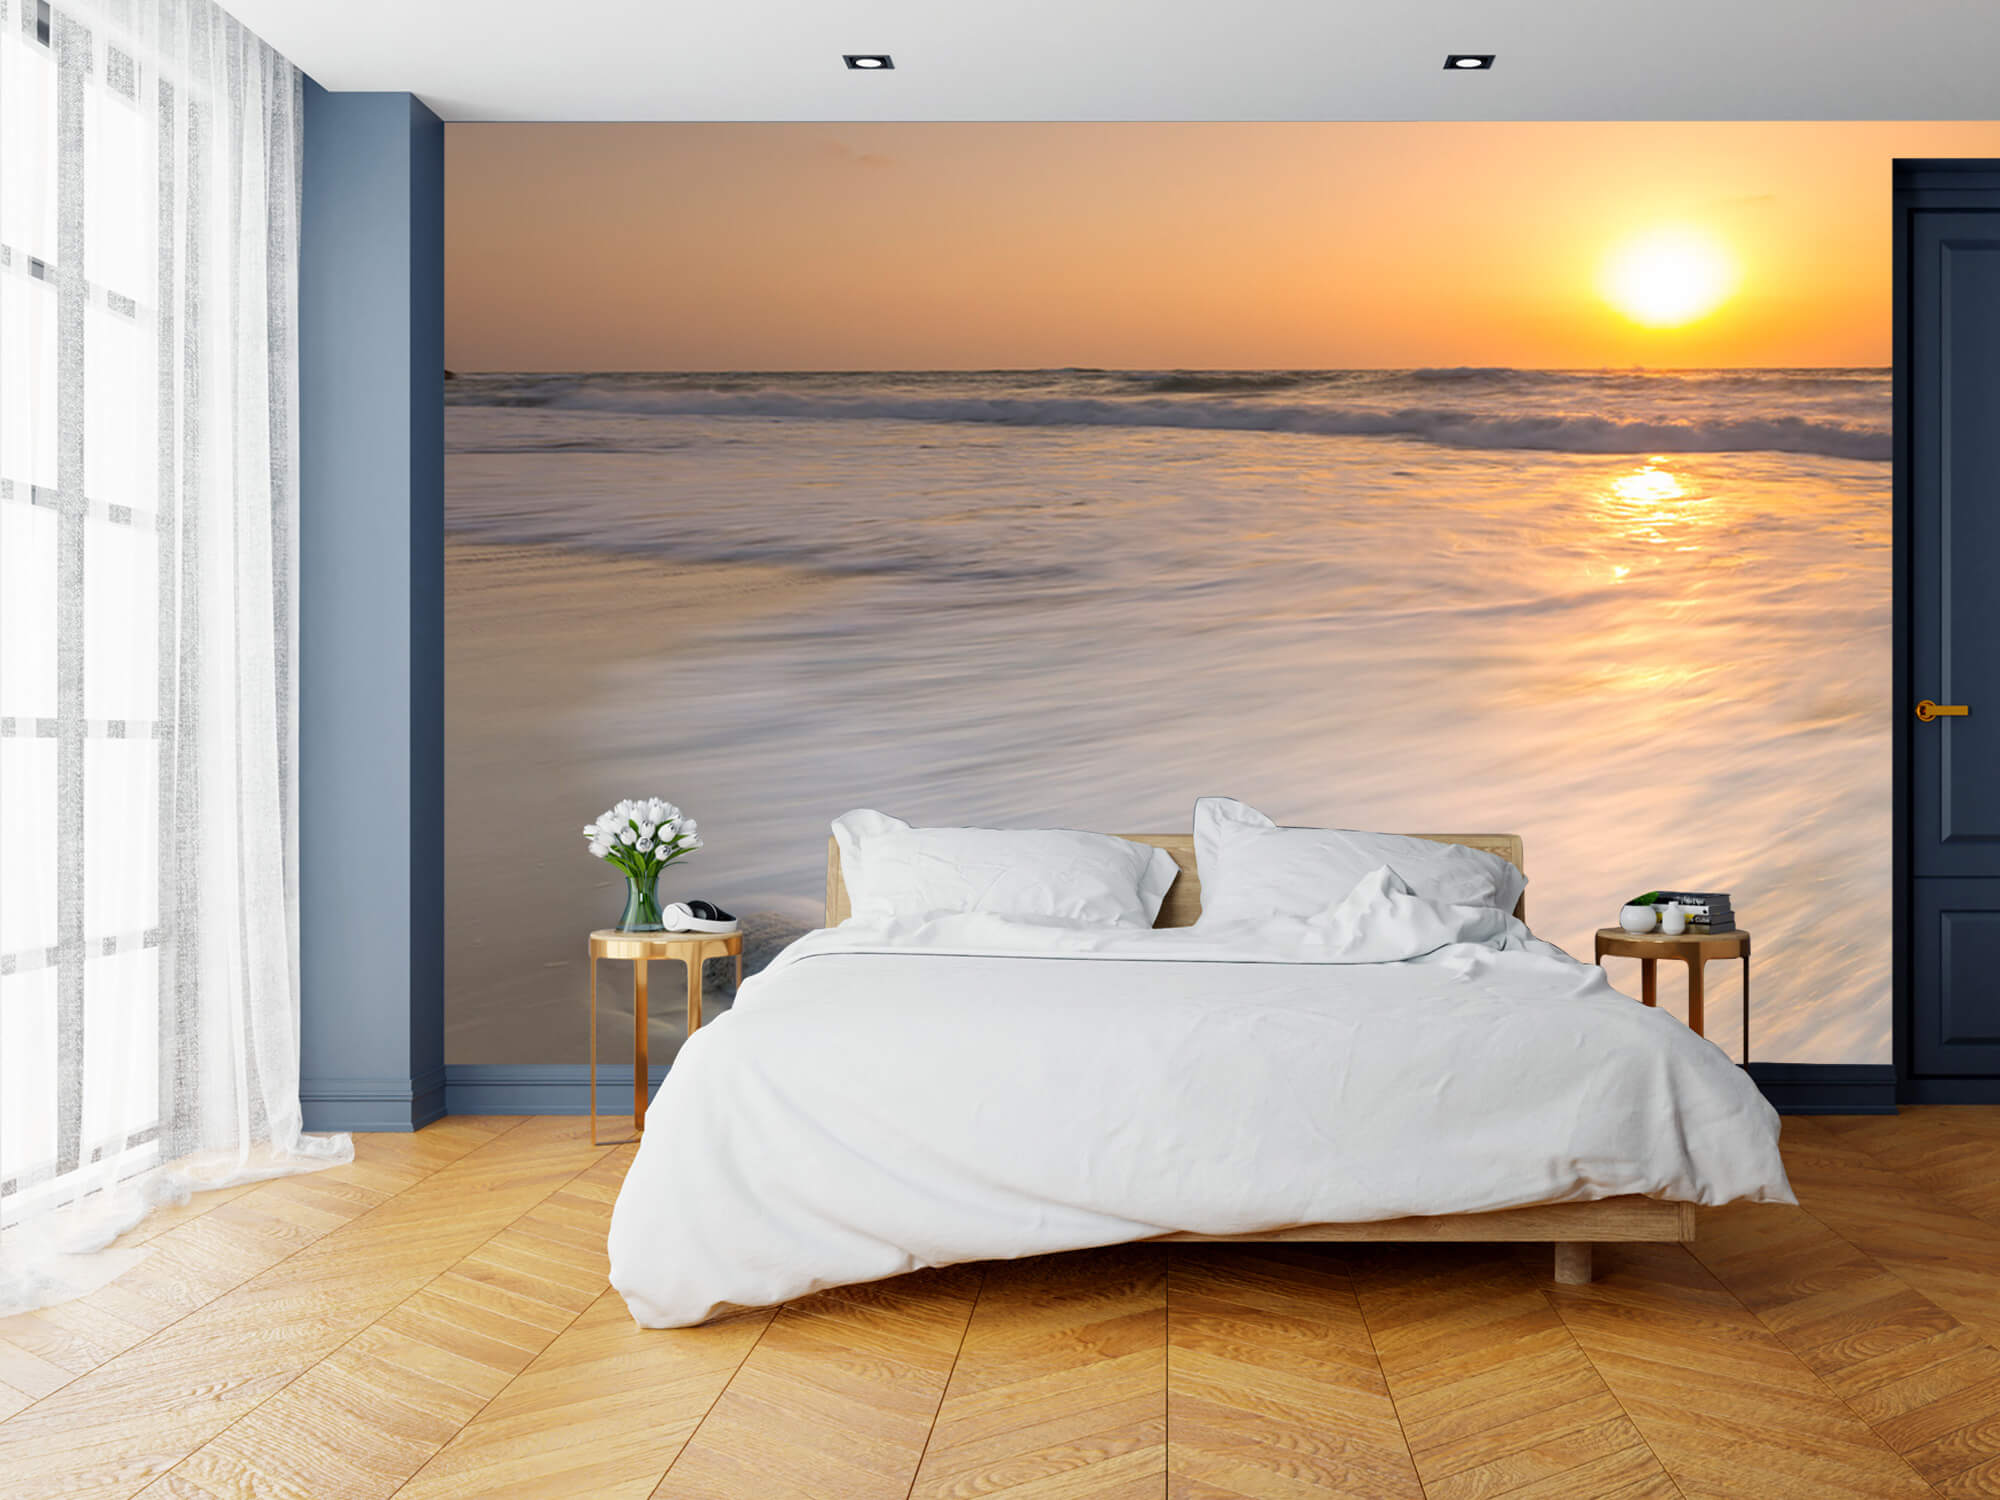  Papel pintado con Puesta de sol en la playa - Habitación 1